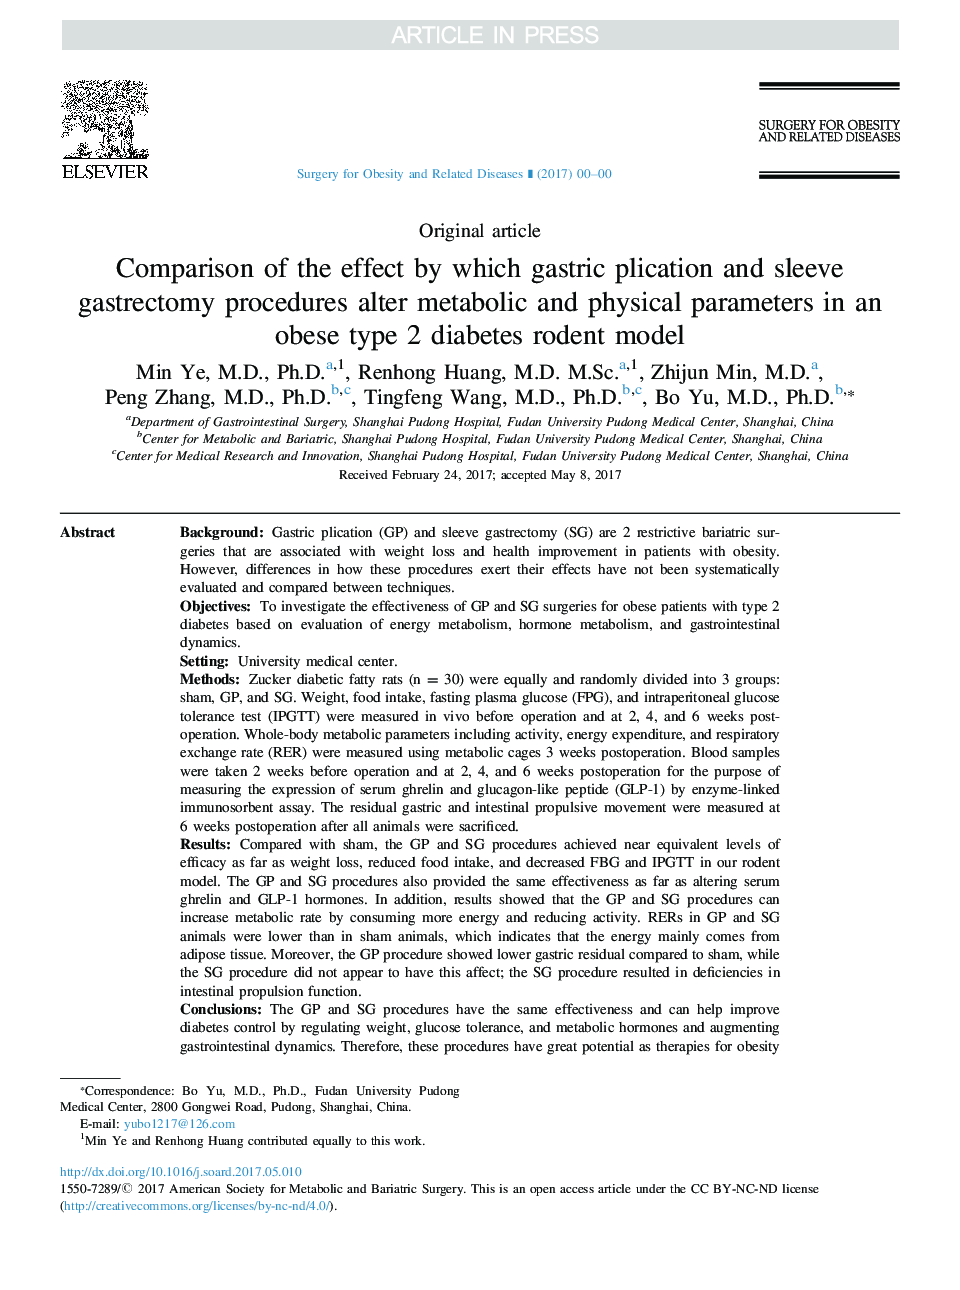 مقایسه تأثیر معاینه فیزیکی و معاینه فیزیکی در بیماران مبتلا به دیابت نوع 2 چاقی 